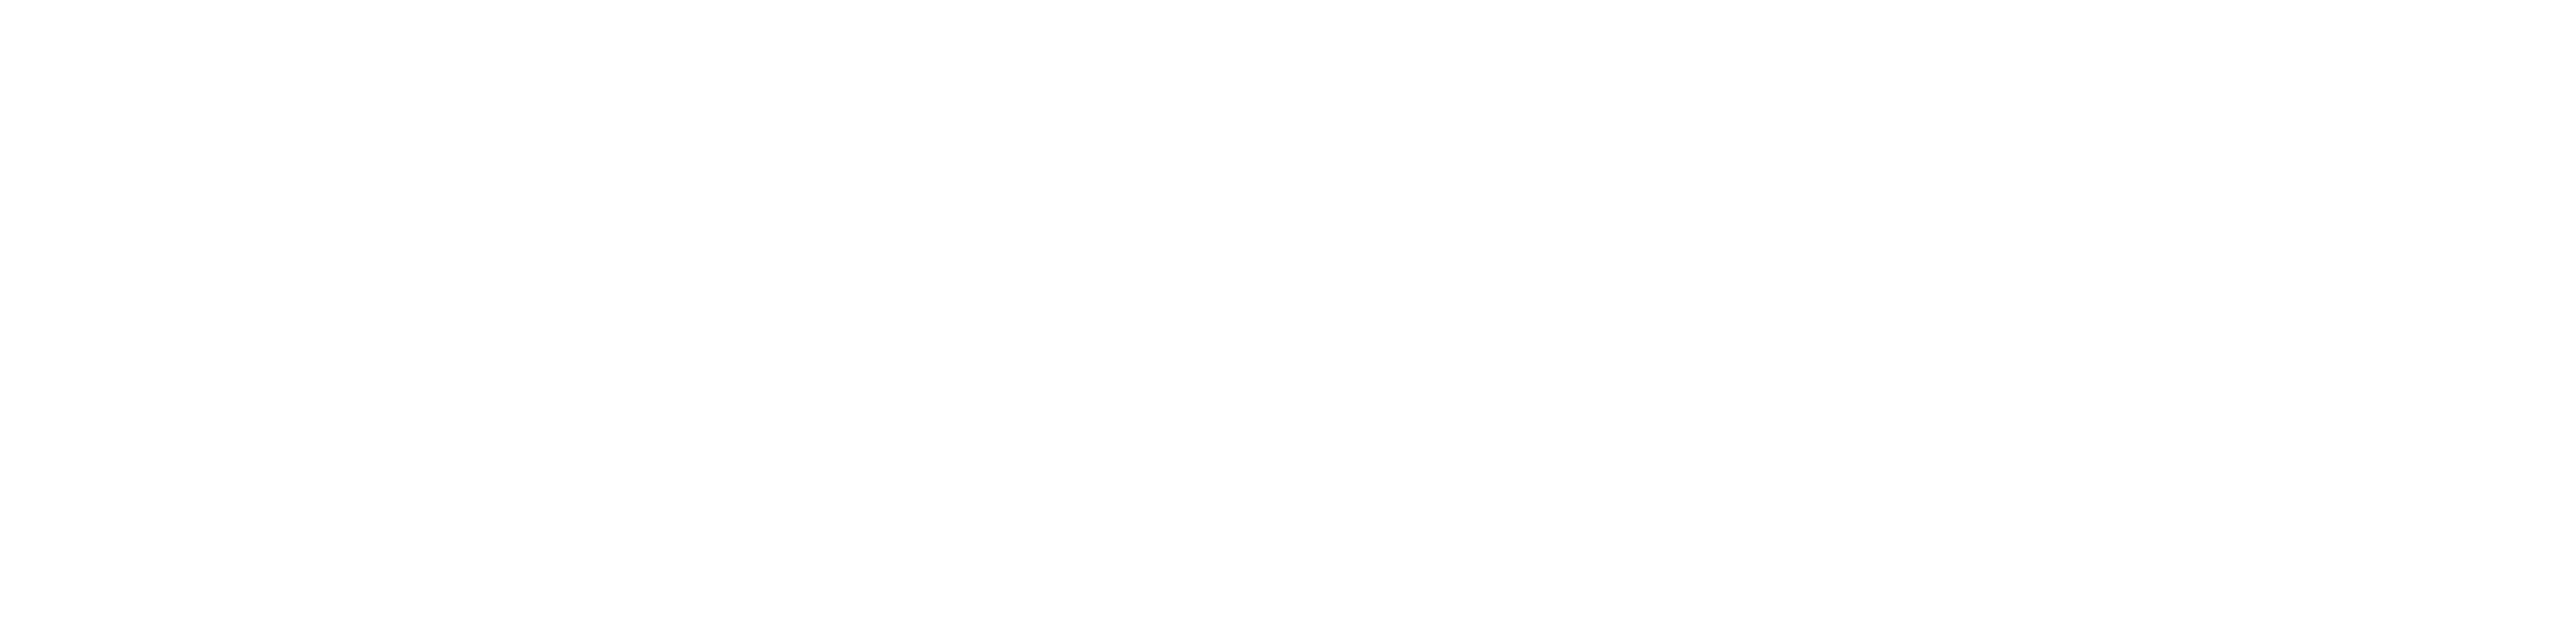 logo pspa